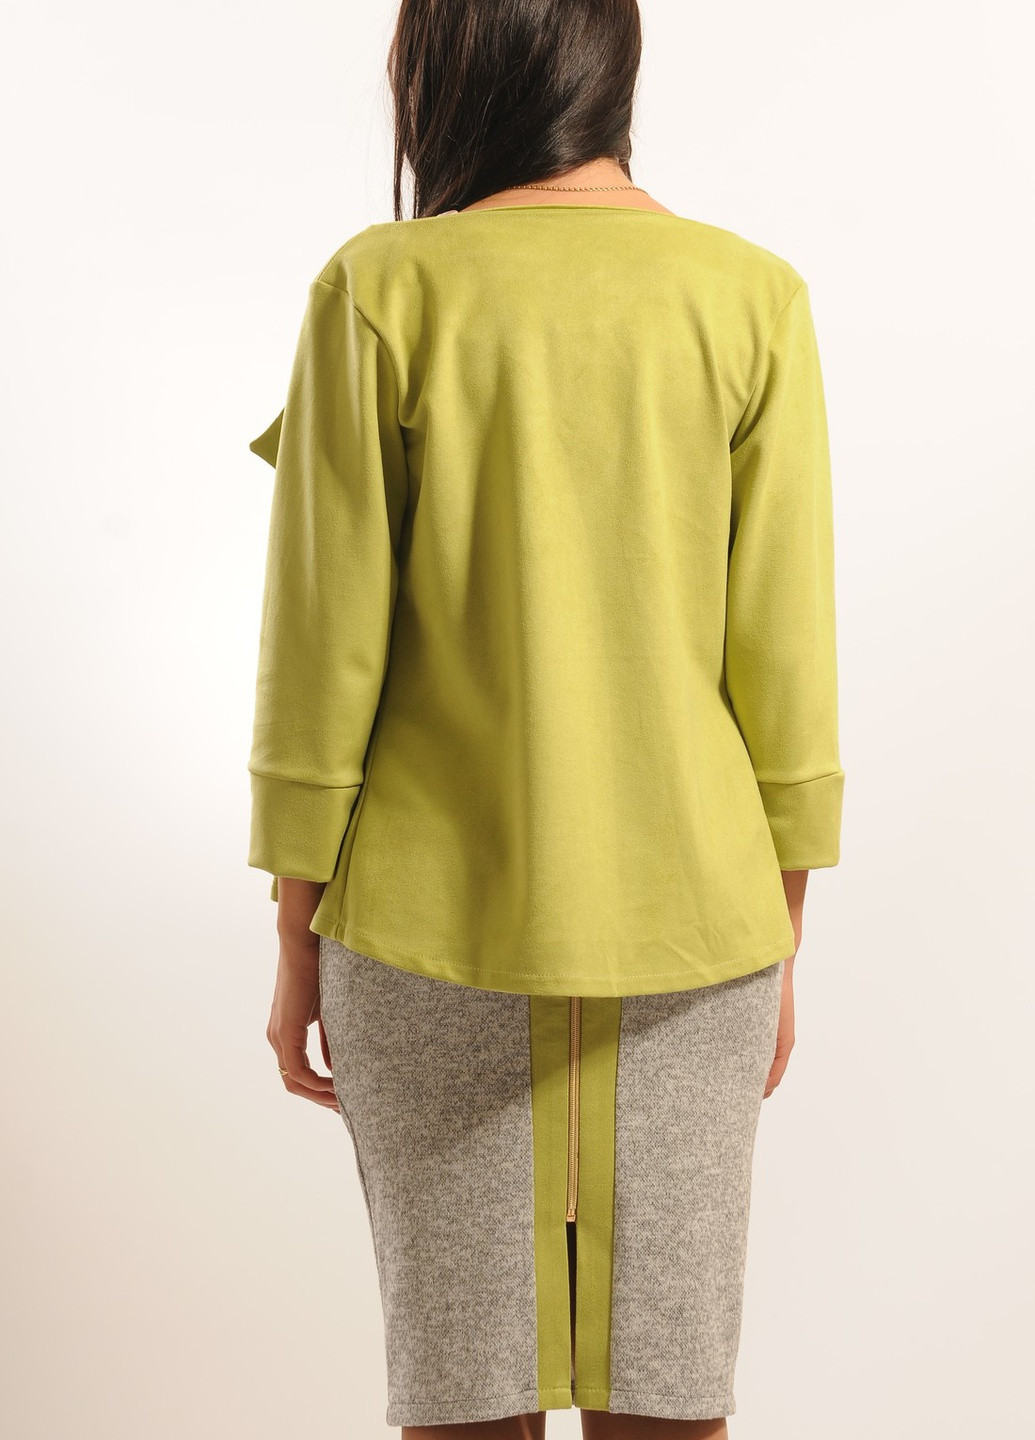 Салатовый женский пиджак Ри Мари однотонный - демисезонный